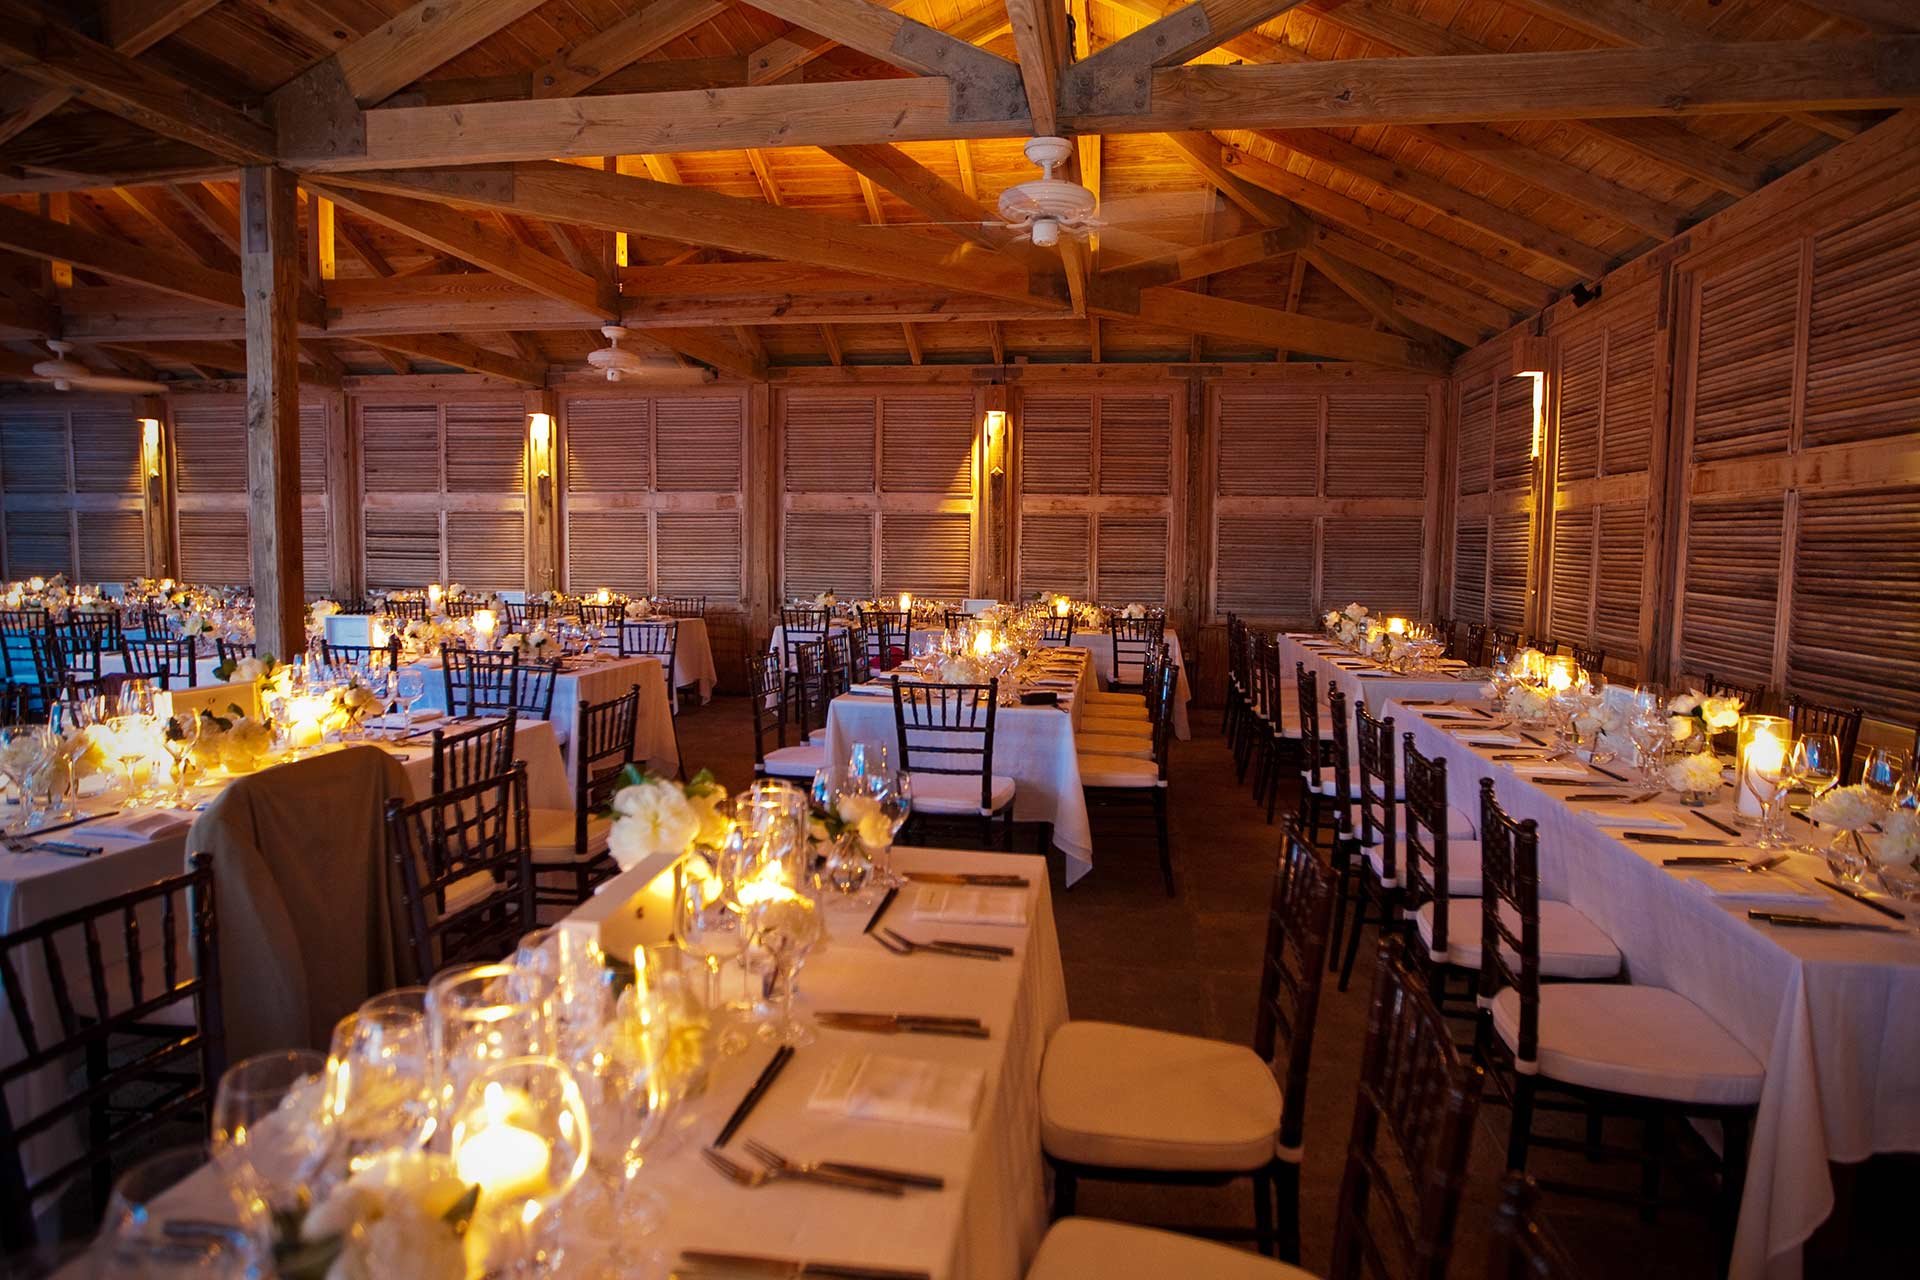 Die Restaurant-Räumlichkeiten können wir private Anlässe wie Hochzeiten genützt werden.